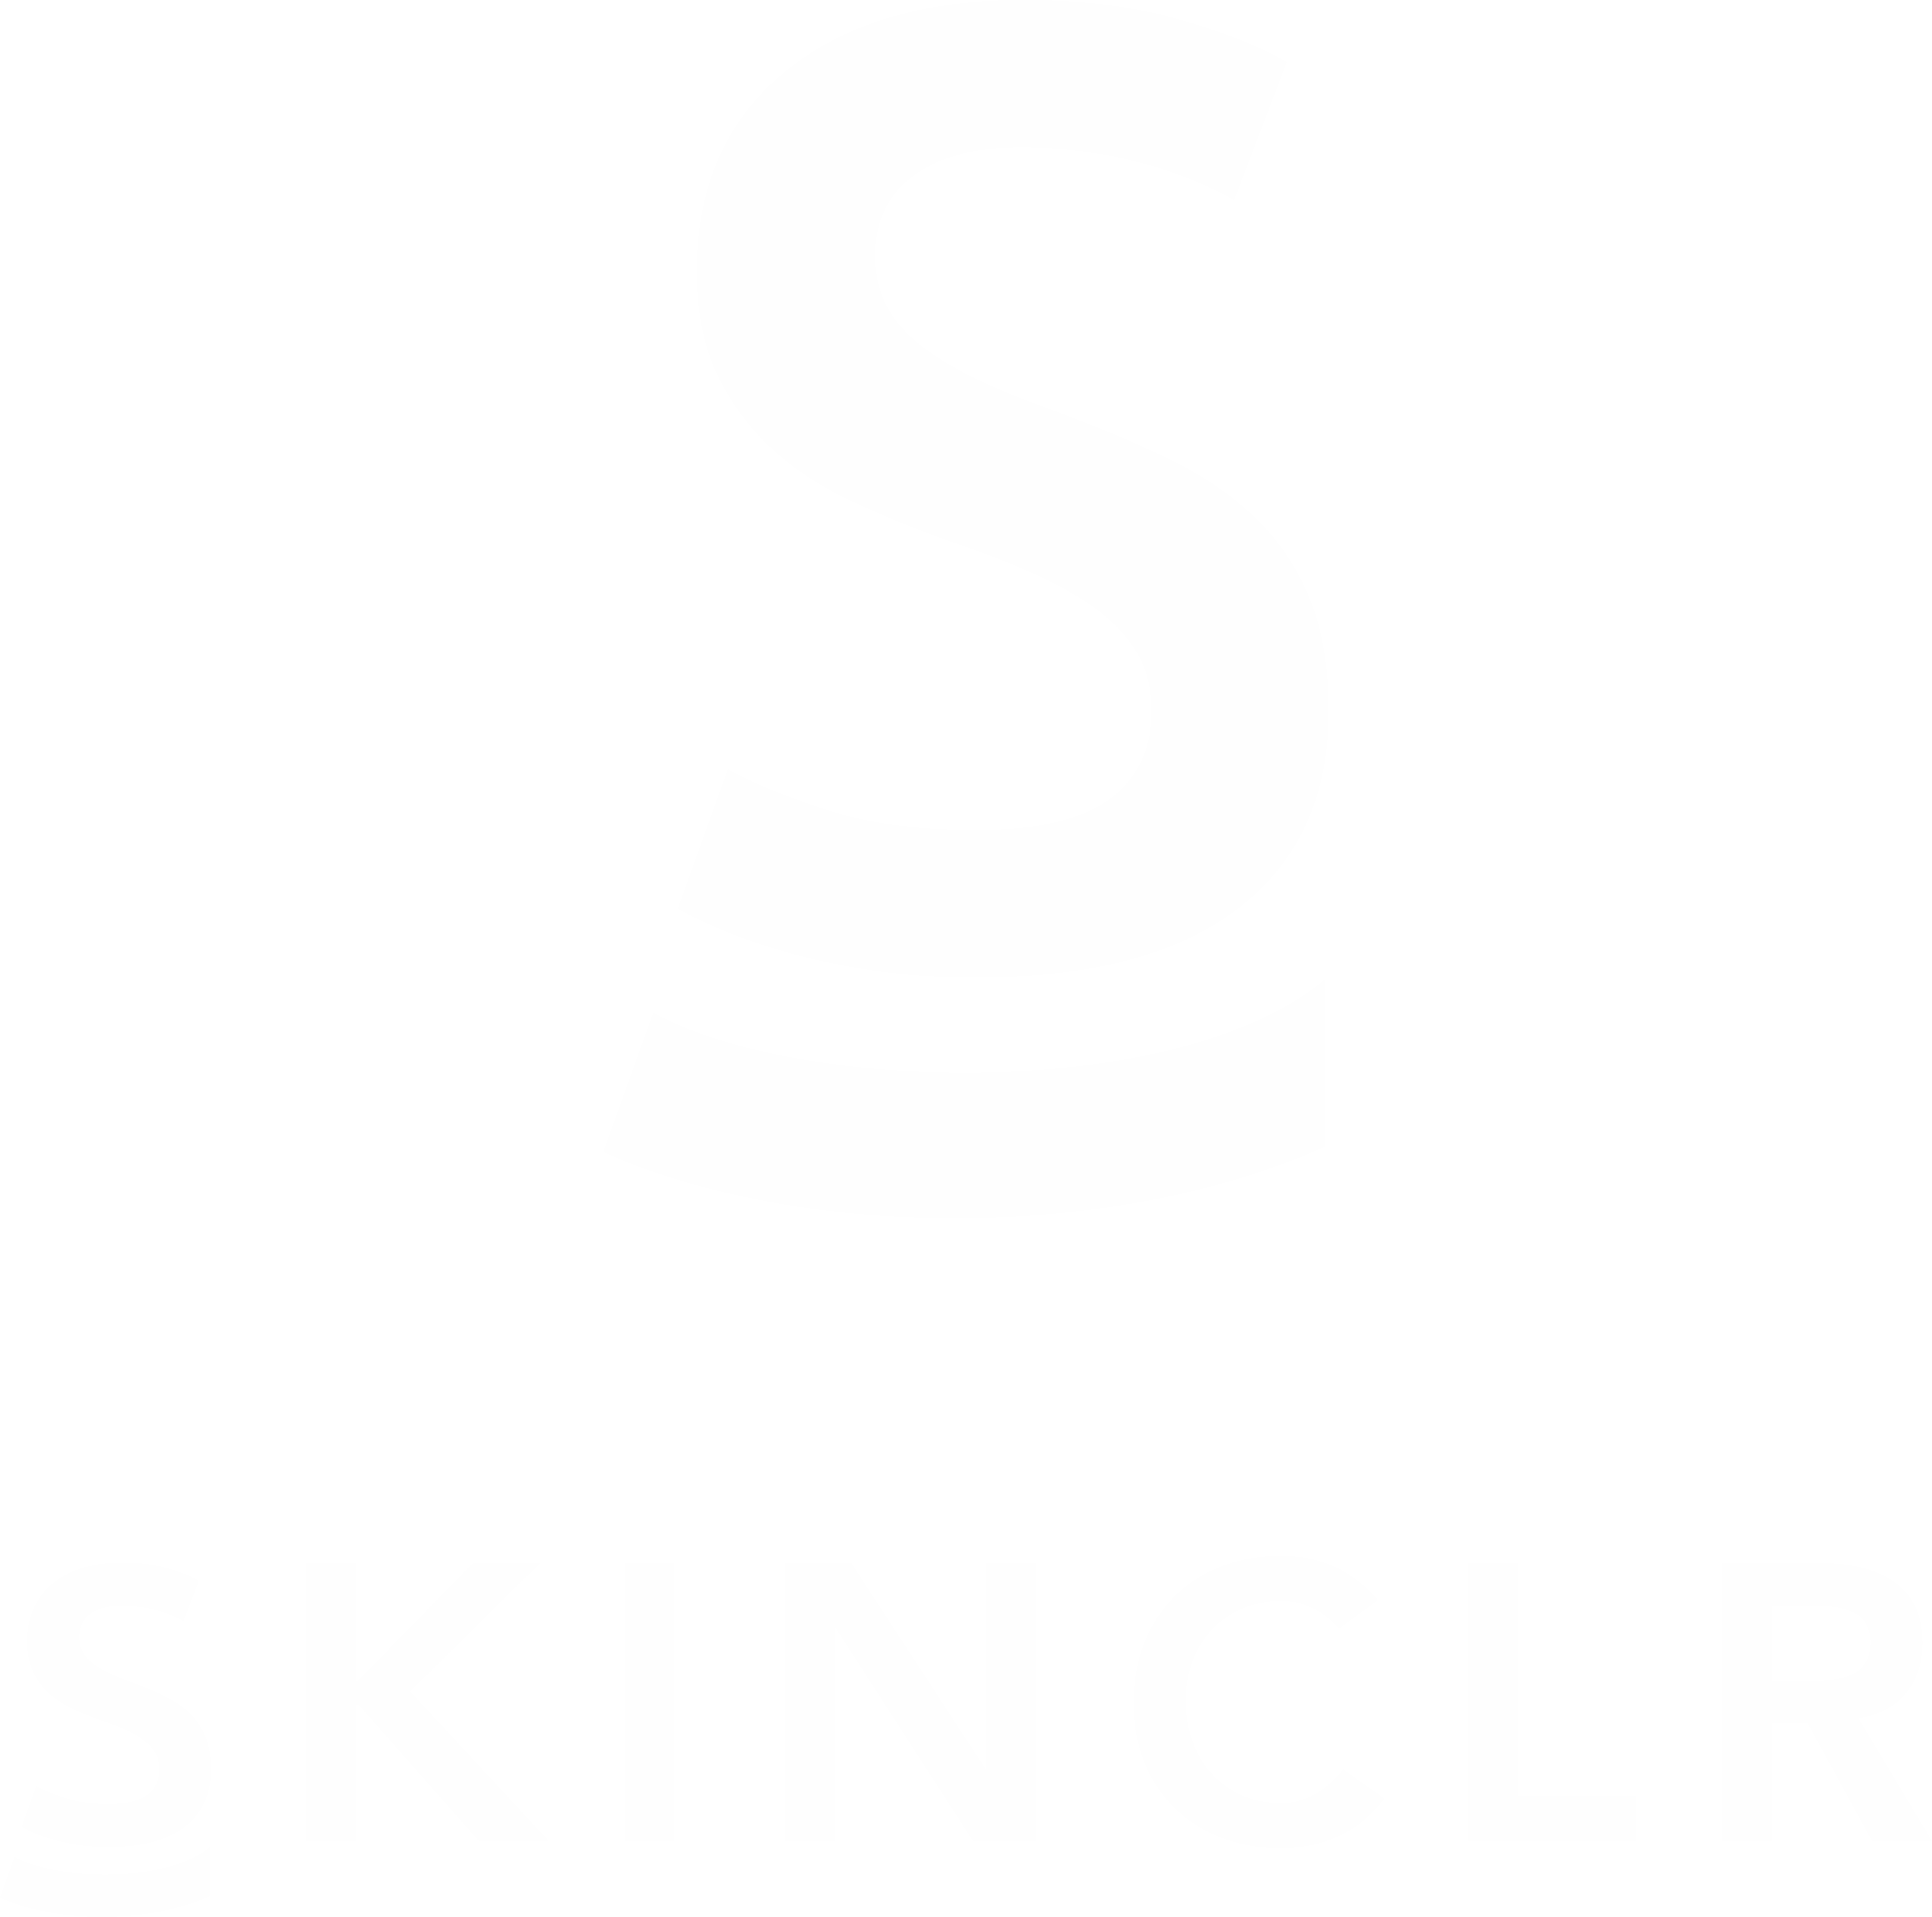 SkinCLR